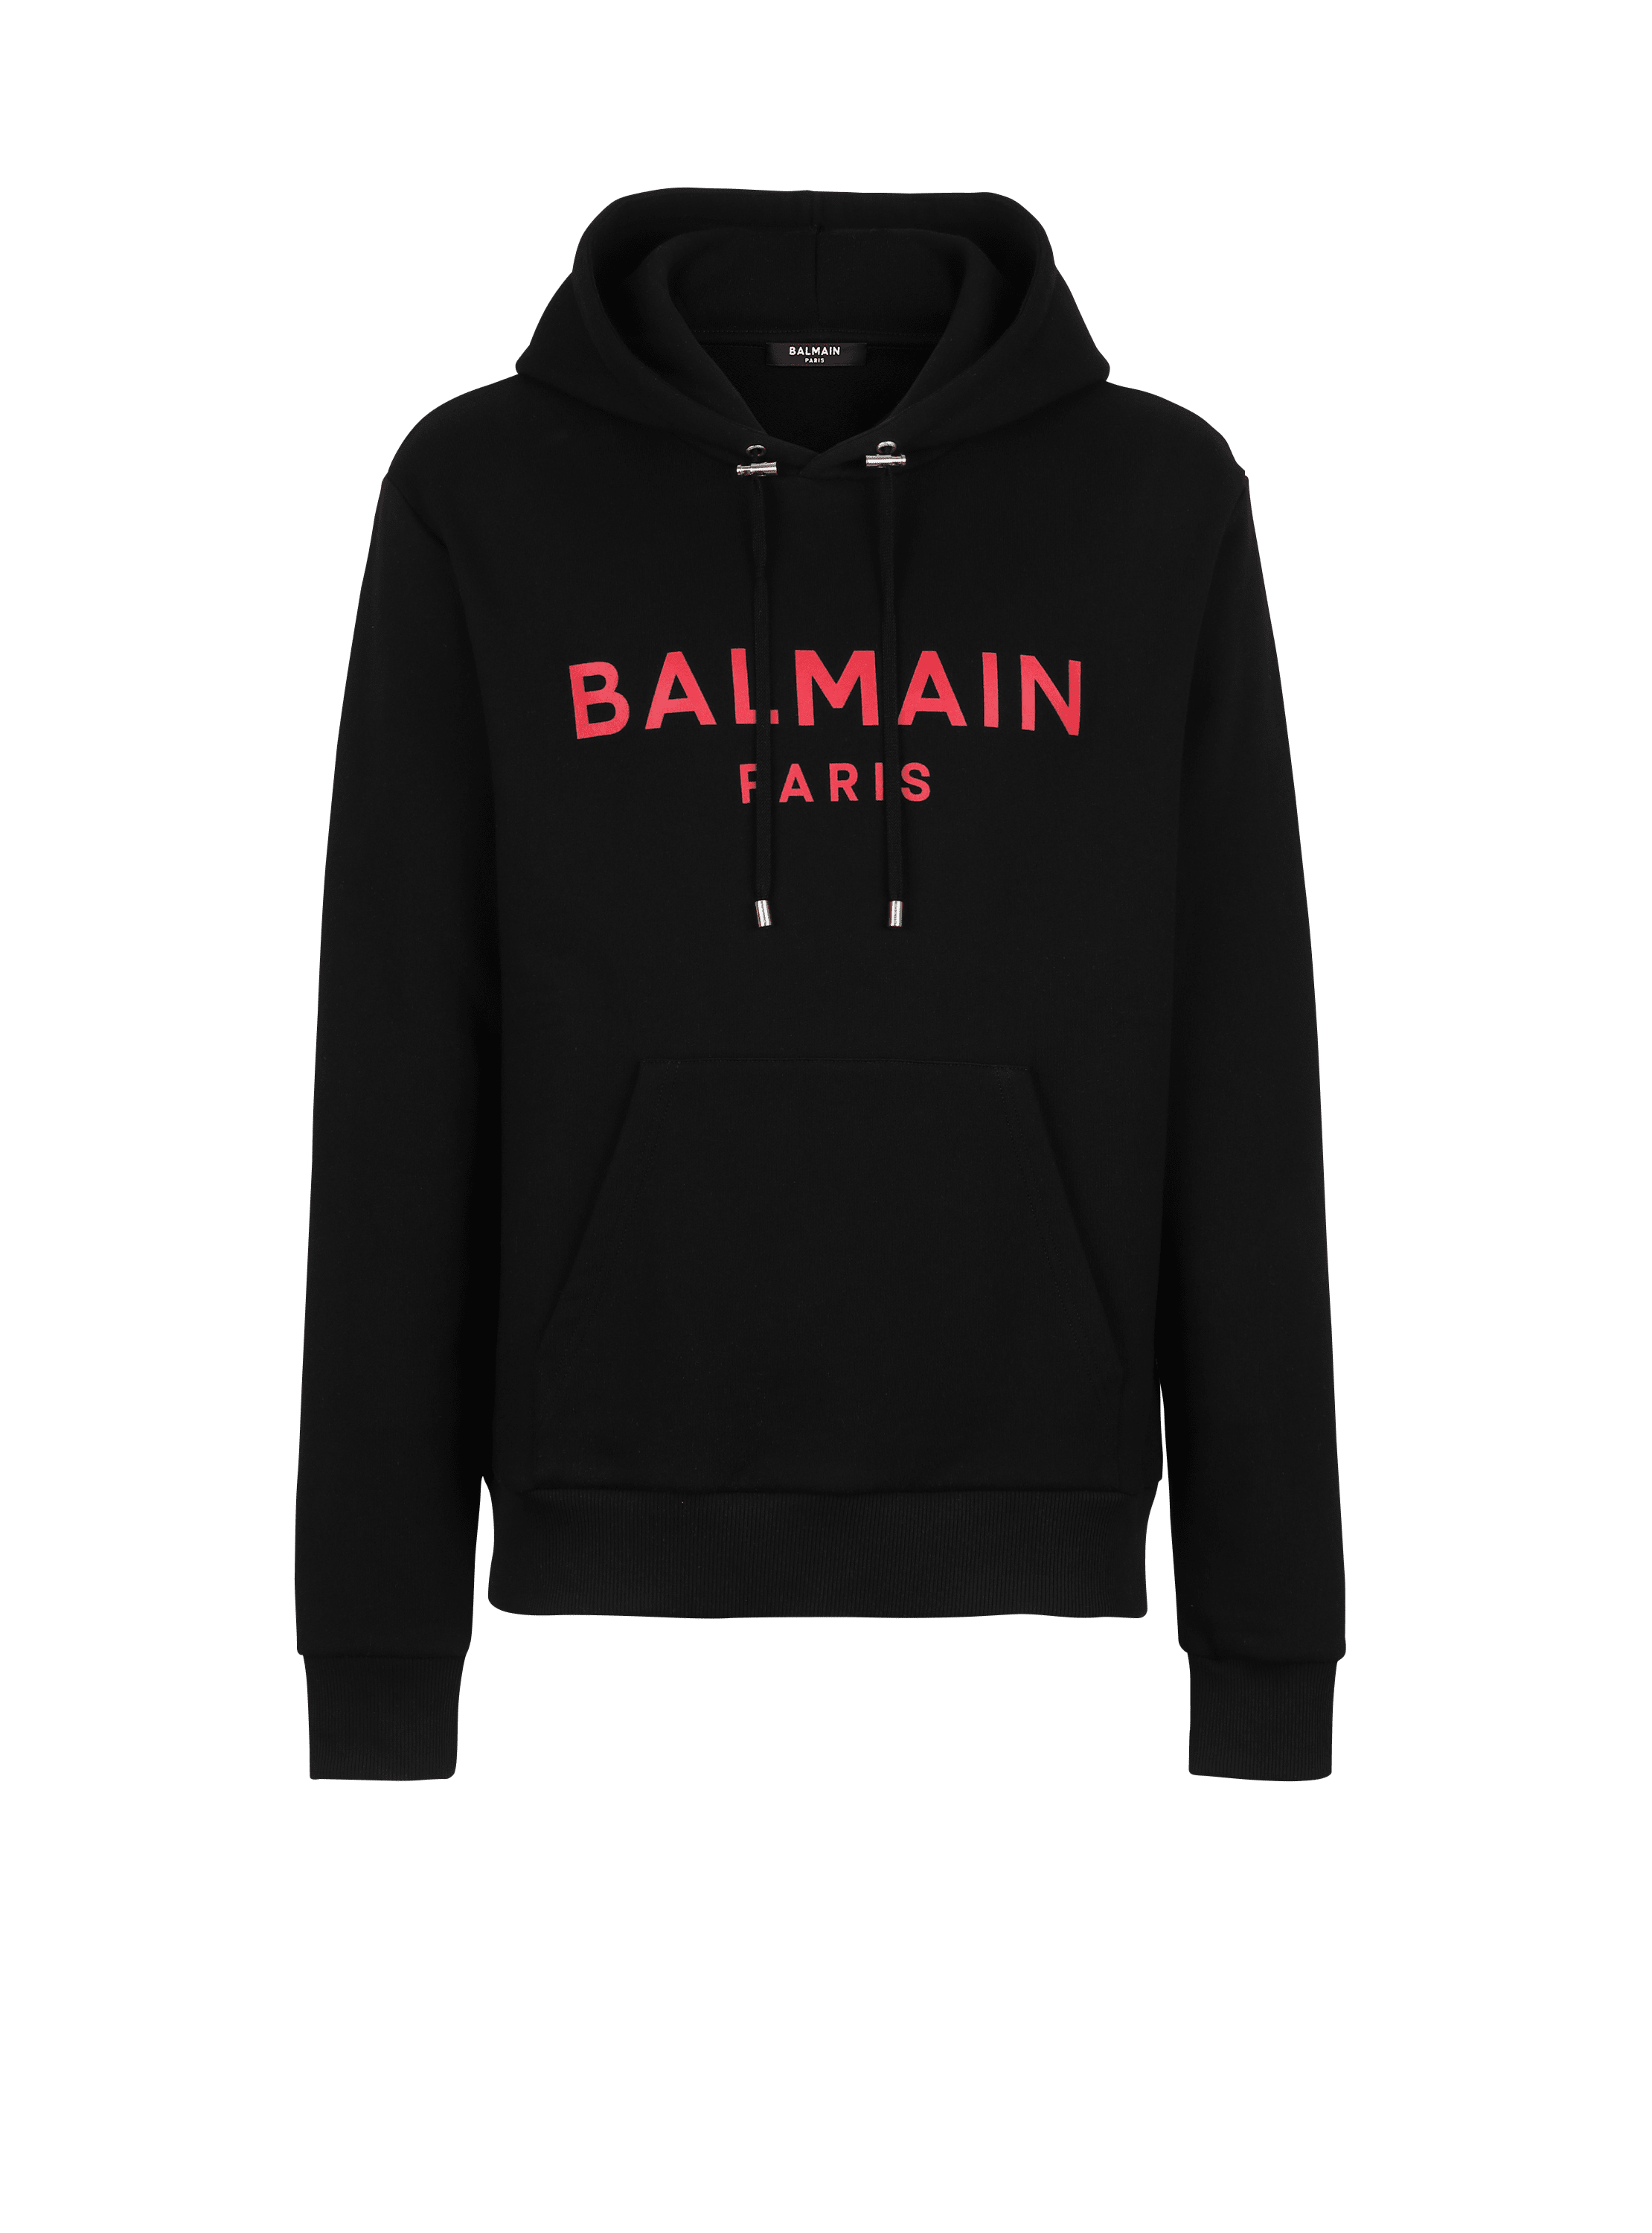 EXCLUSIF - Sweat en coton imprimé logo Balmain Paris, noir, hi-res